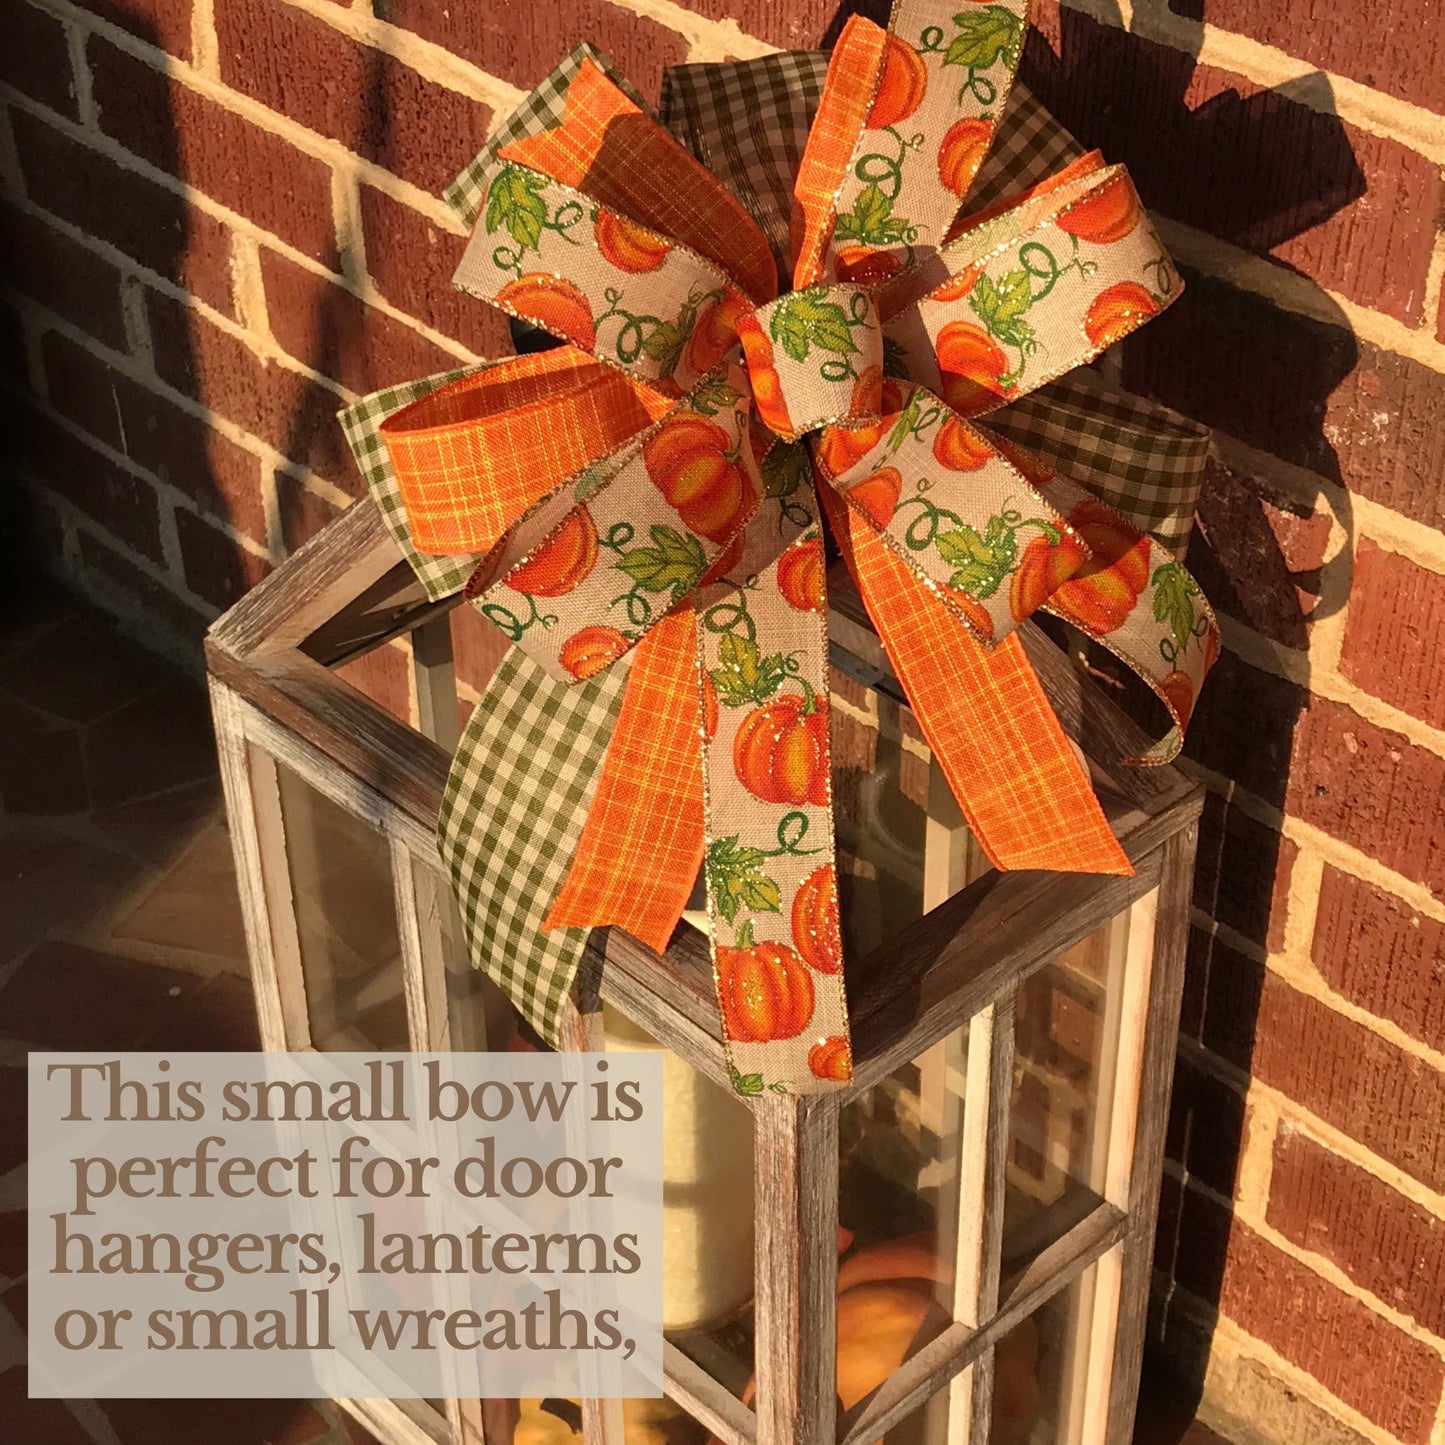 Fall Lantern Bow, Fall Orange Pumpkin Bow, Wreath bow, 11 Inch bow